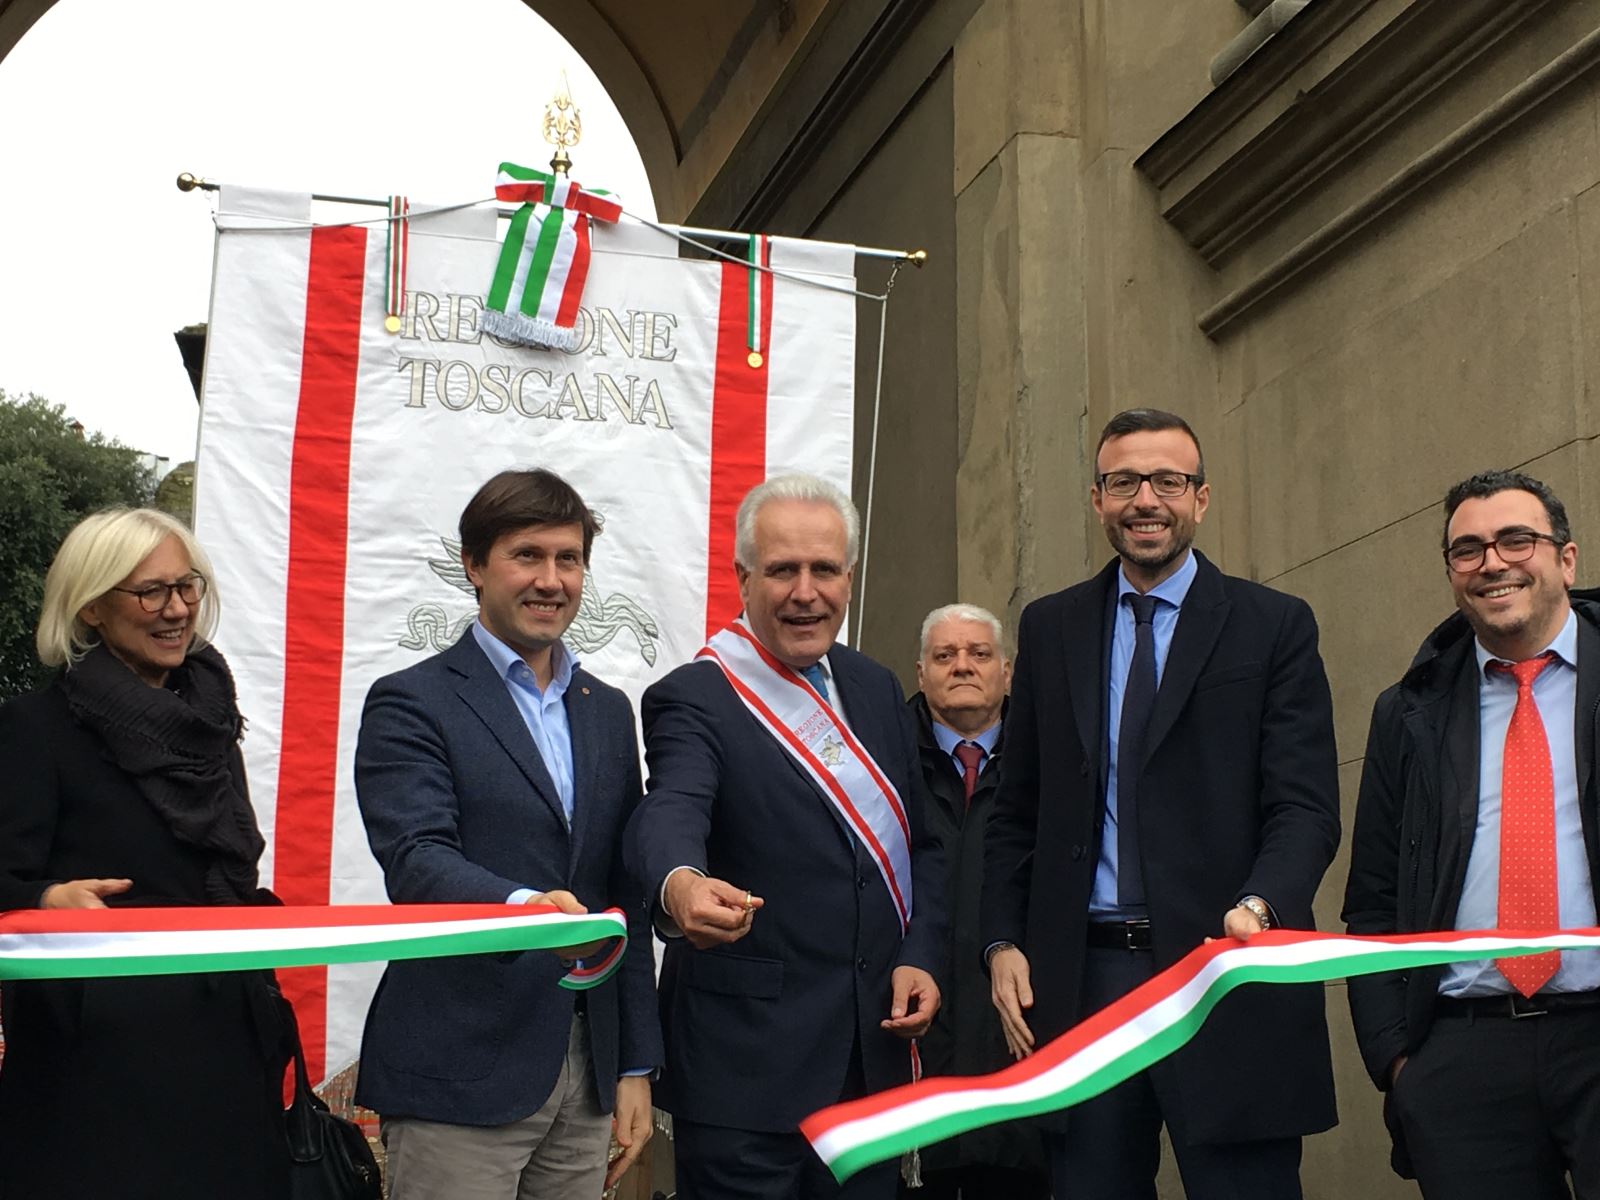 Festa della Toscana  inaugurazione della nuova illuminazione dell'Arco di Trionfo dei Lorena, in piazza della Libertà